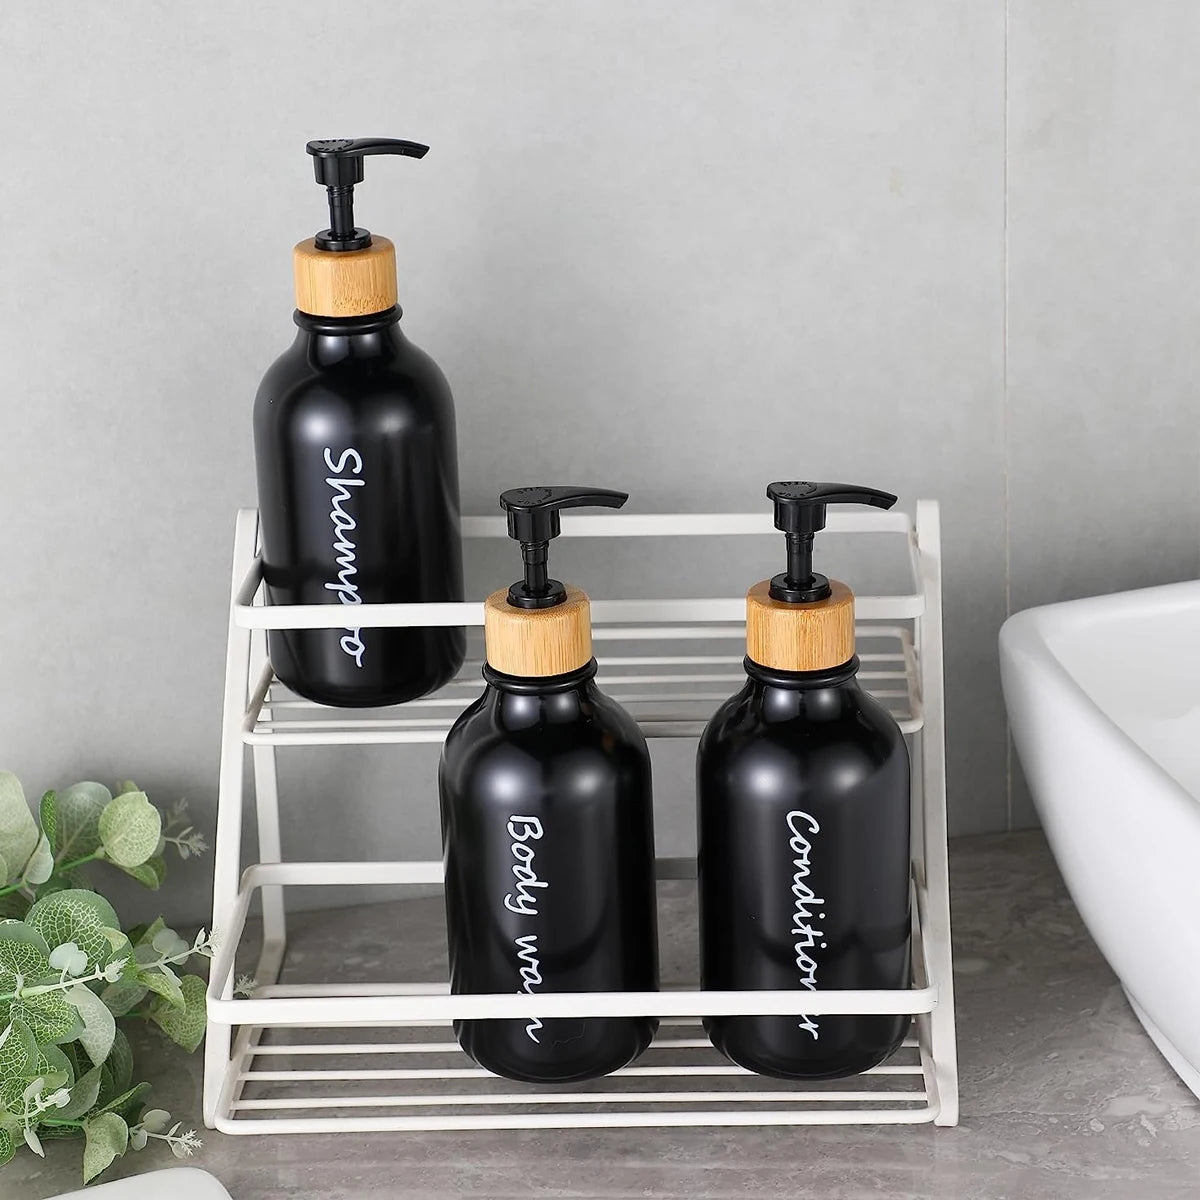 Frascos Trio Dispensador para Banheiro - Shampoo, Condicionador e Gel de Banho 500 ml